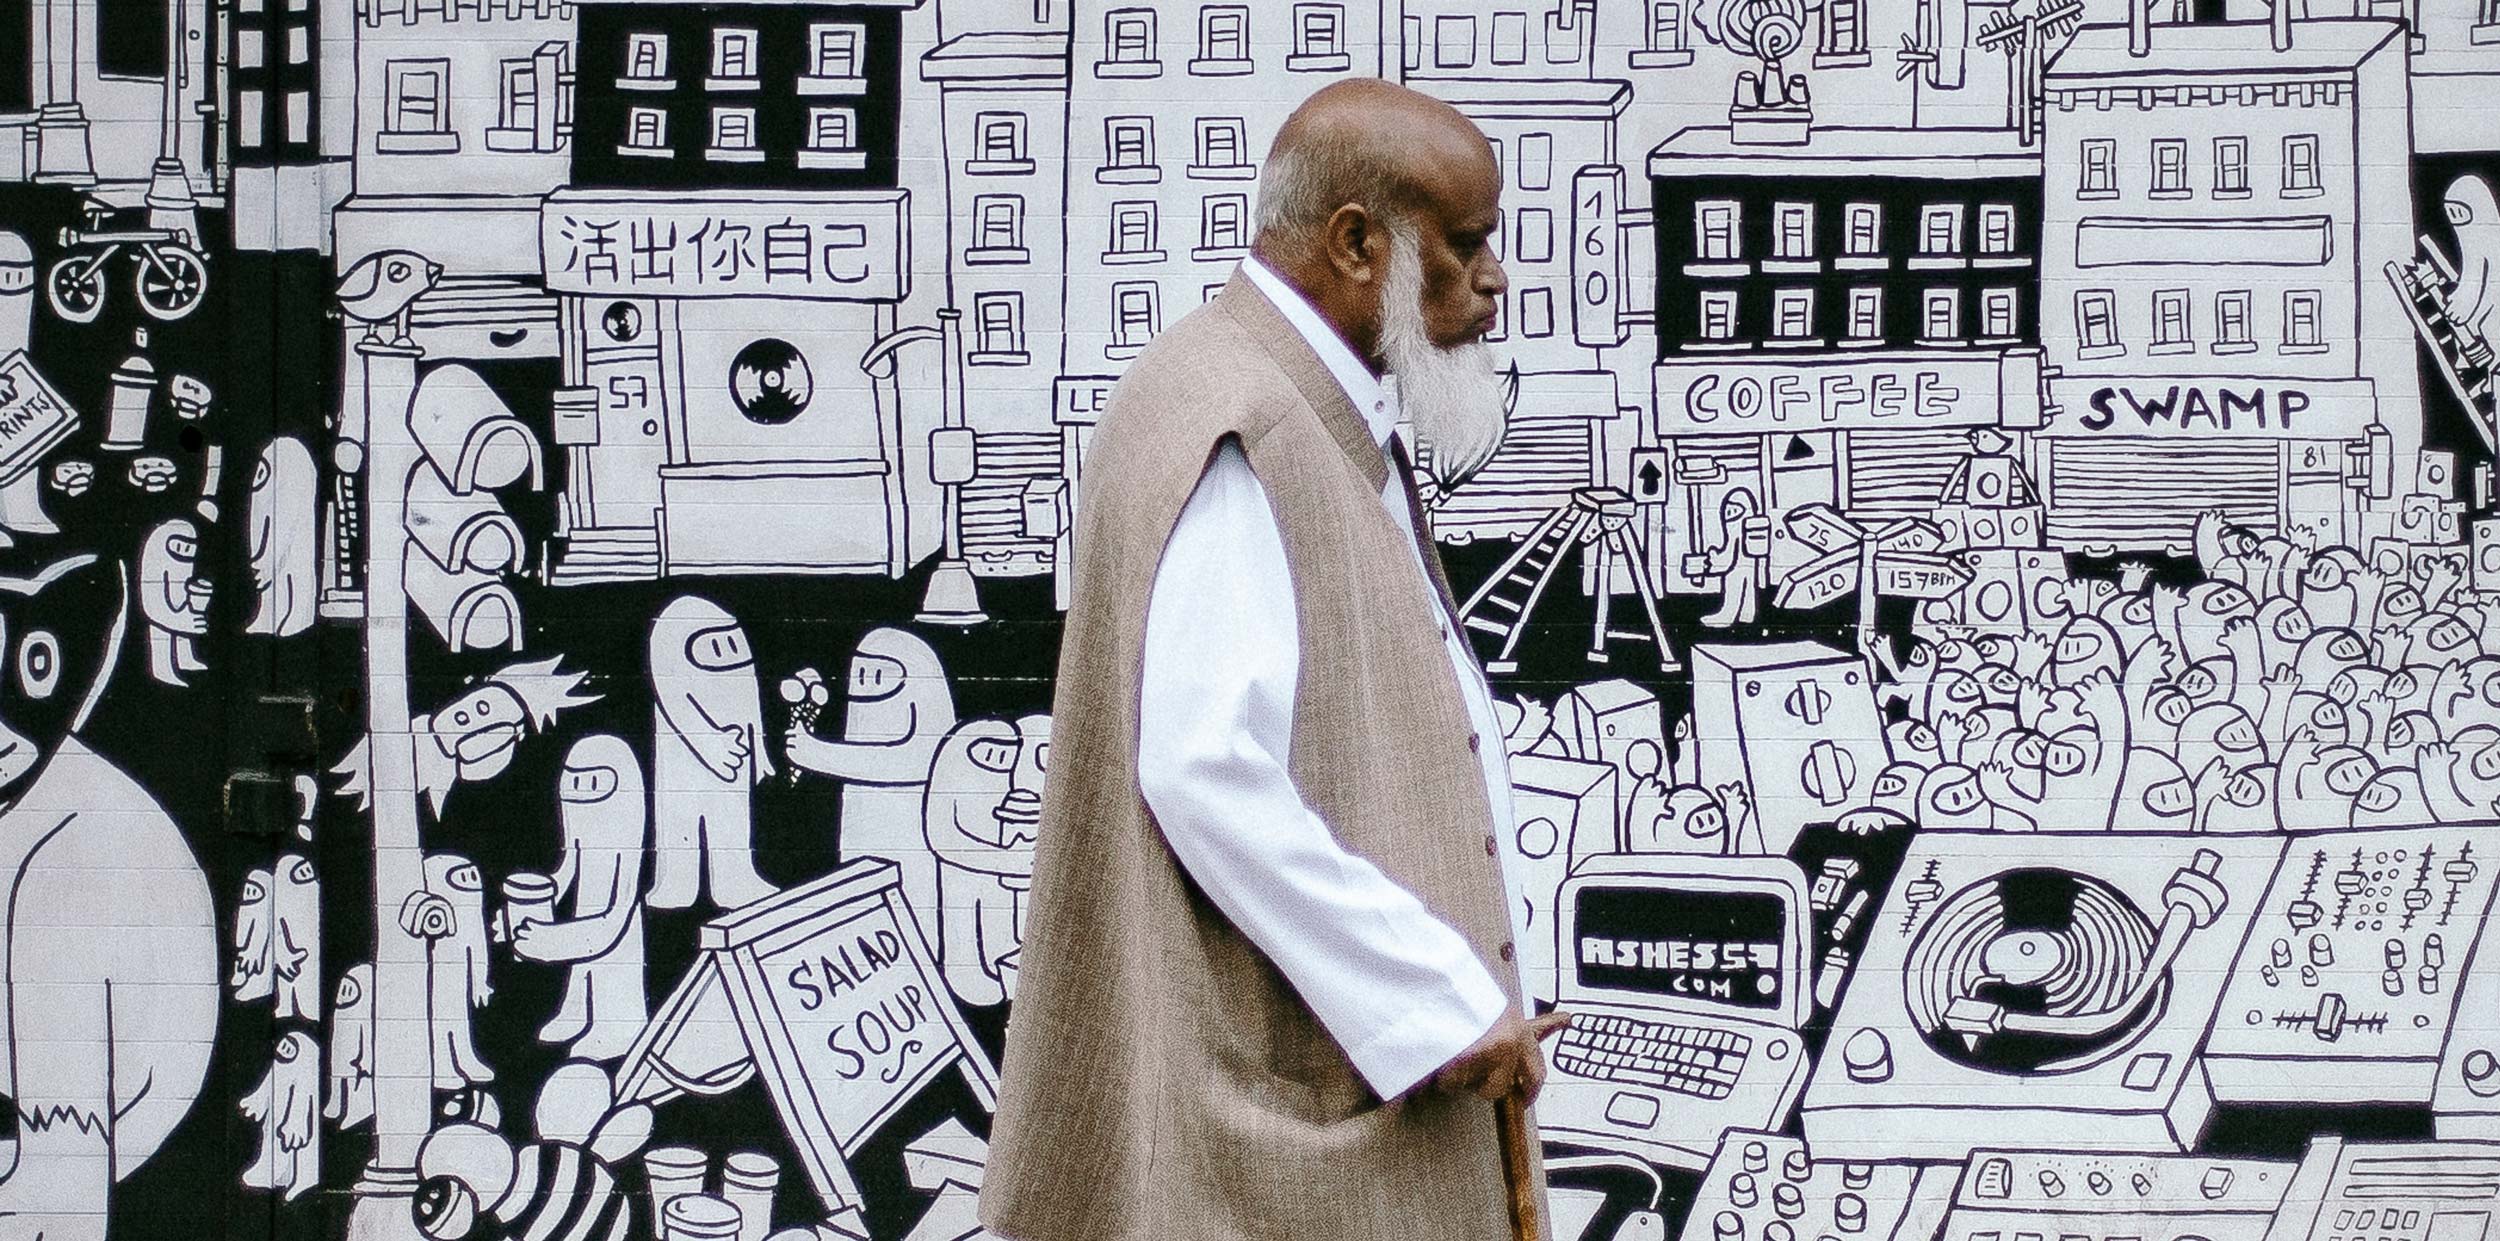 A man walking down a street in London